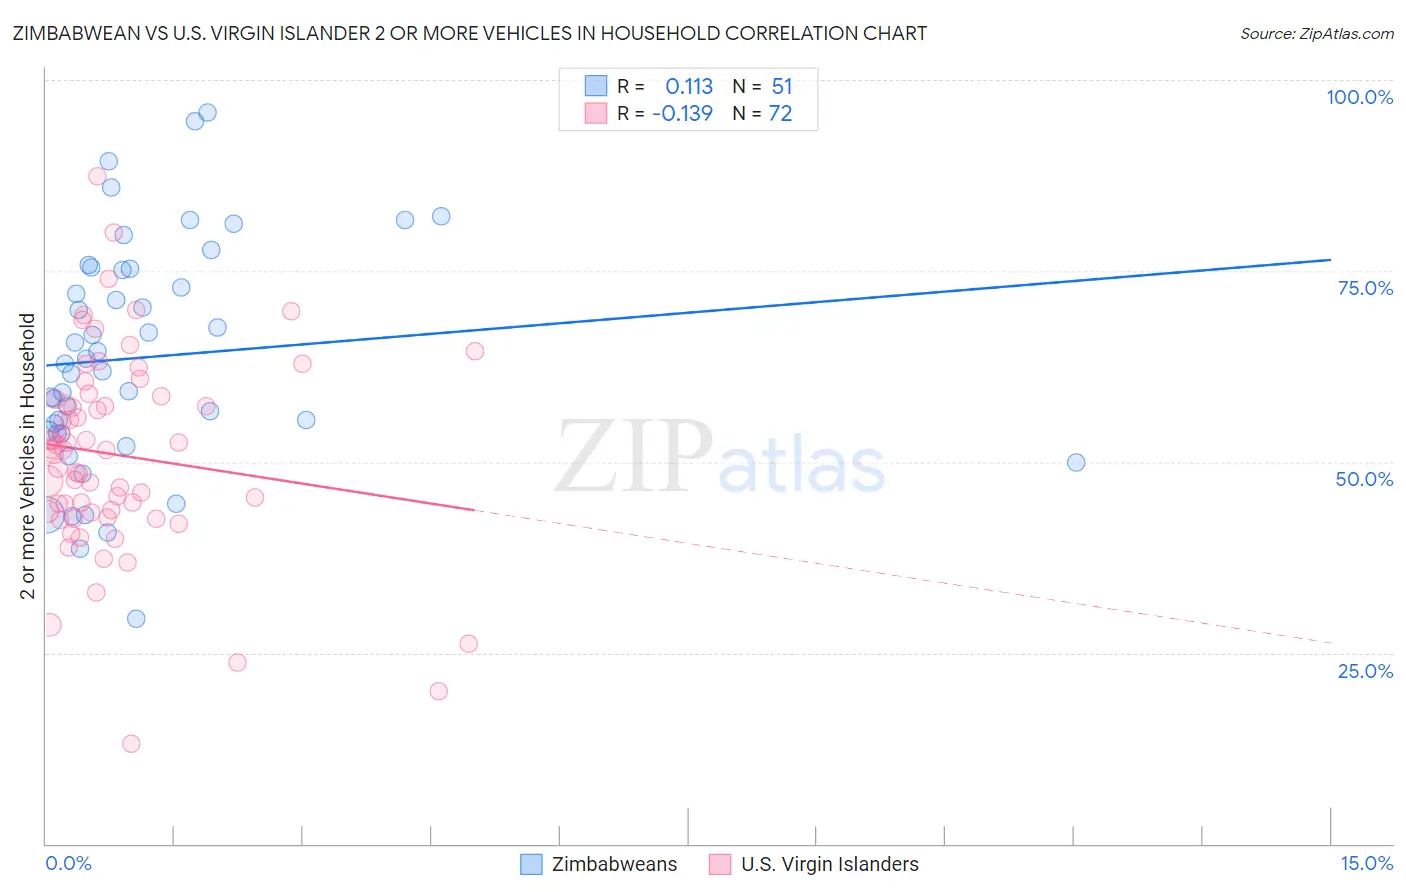 Zimbabwean vs U.S. Virgin Islander 2 or more Vehicles in Household